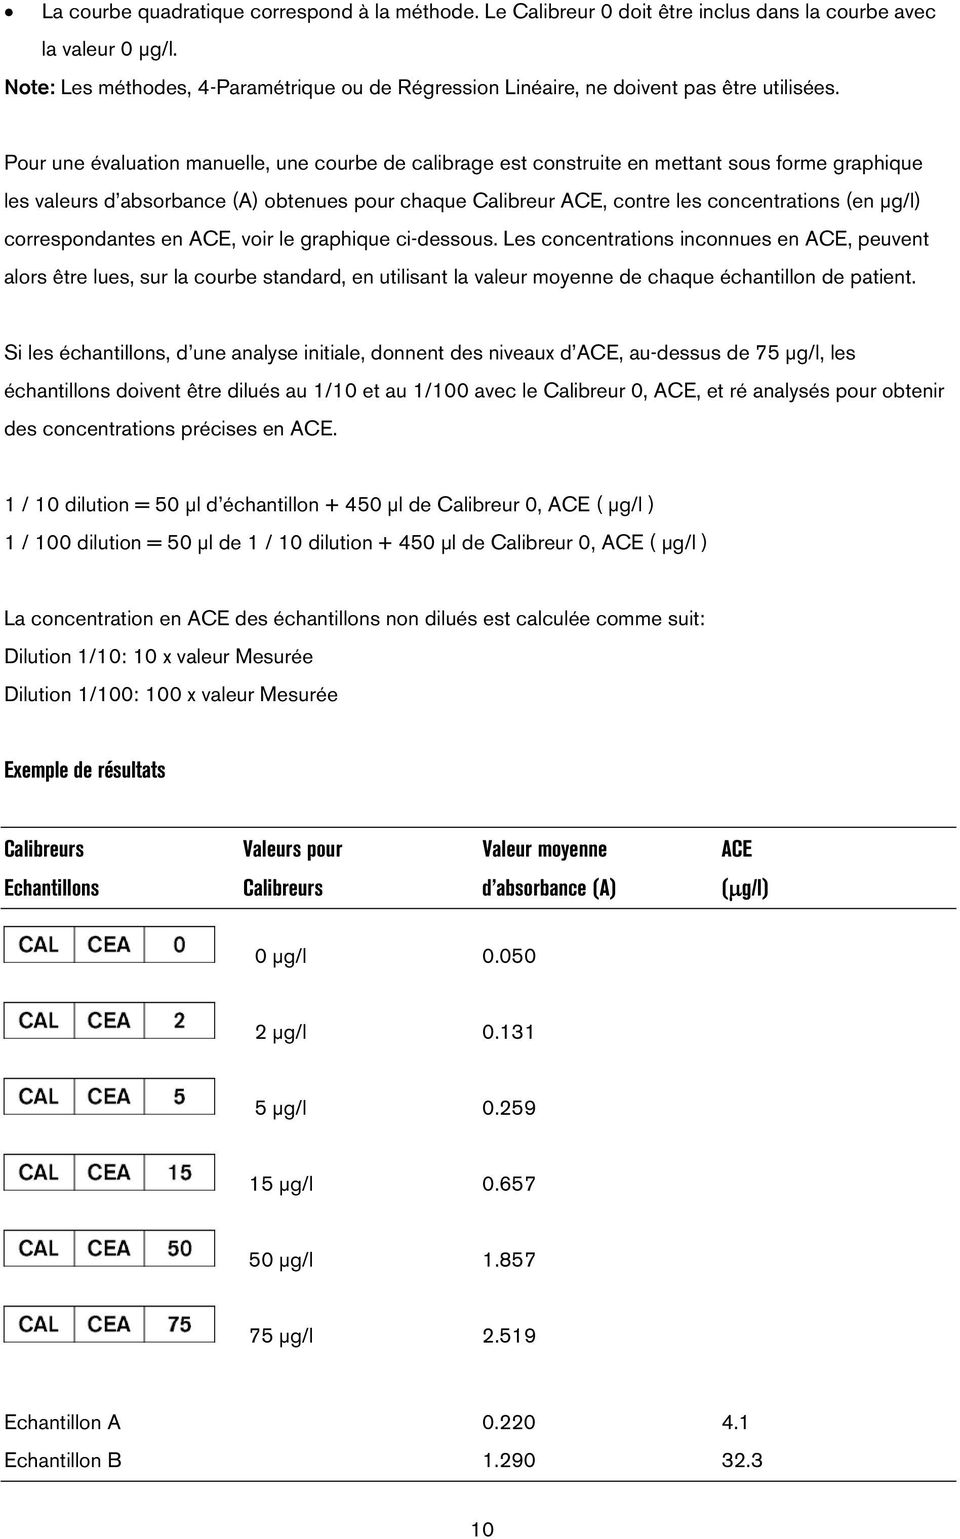 Pour une évaluation manuelle, une courbe de calibrage est construite en mettant sous forme graphique les valeurs d absorbance (A) obtenues pour chaque Calibreur ACE, contre les concentrations (en